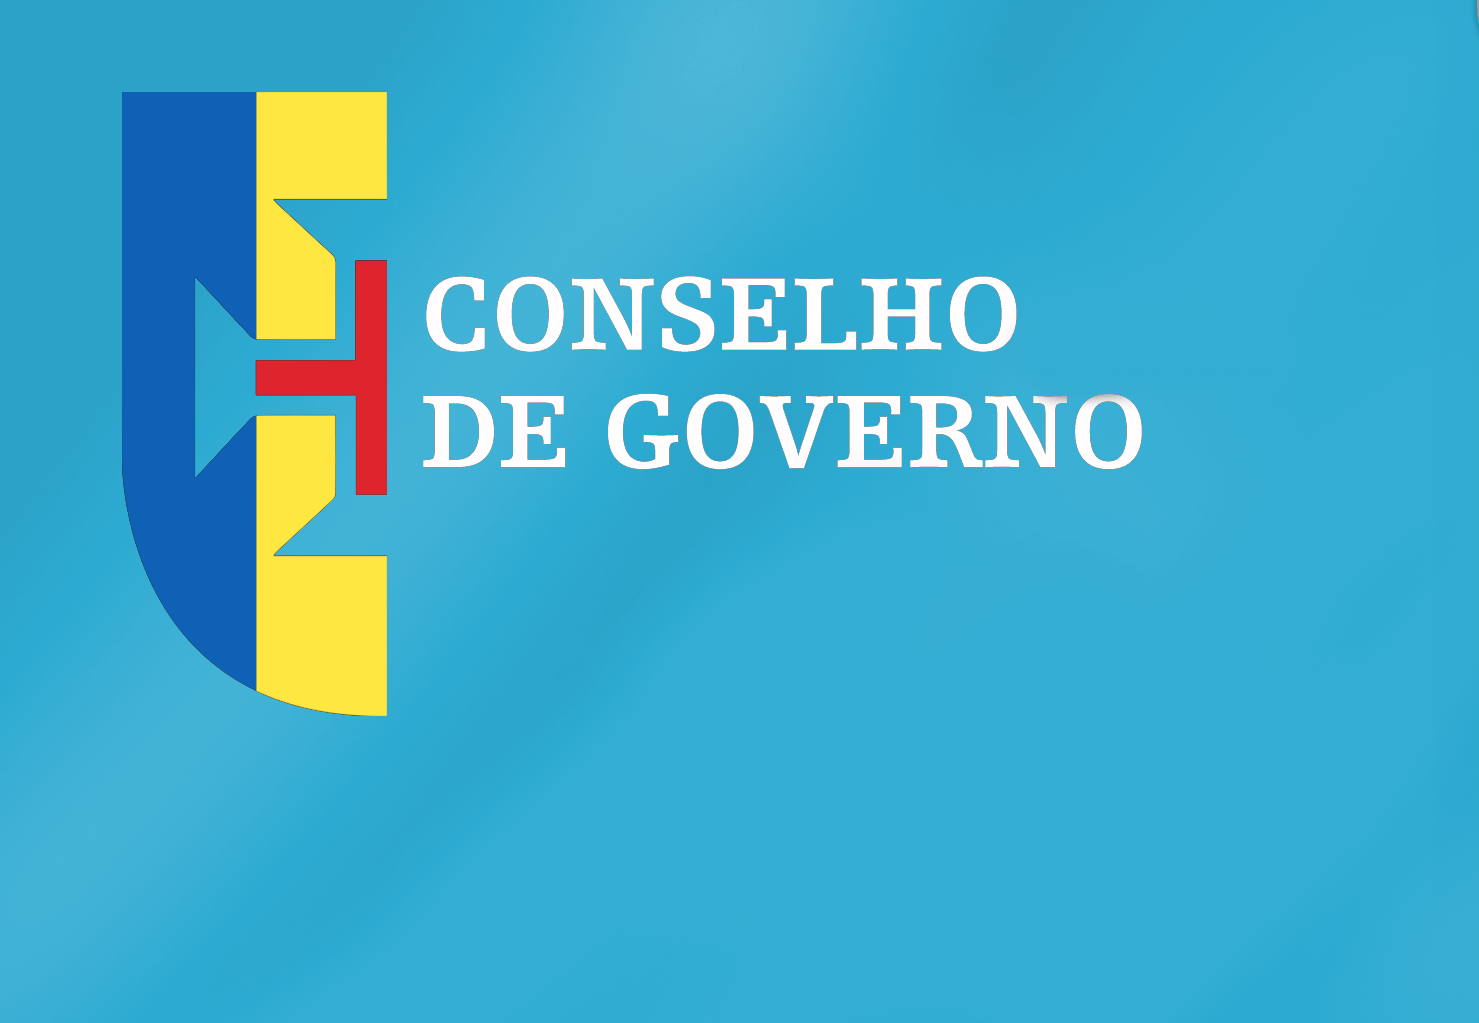 Conclusões do Conselho de Governo - 29 de dezembro de 2021